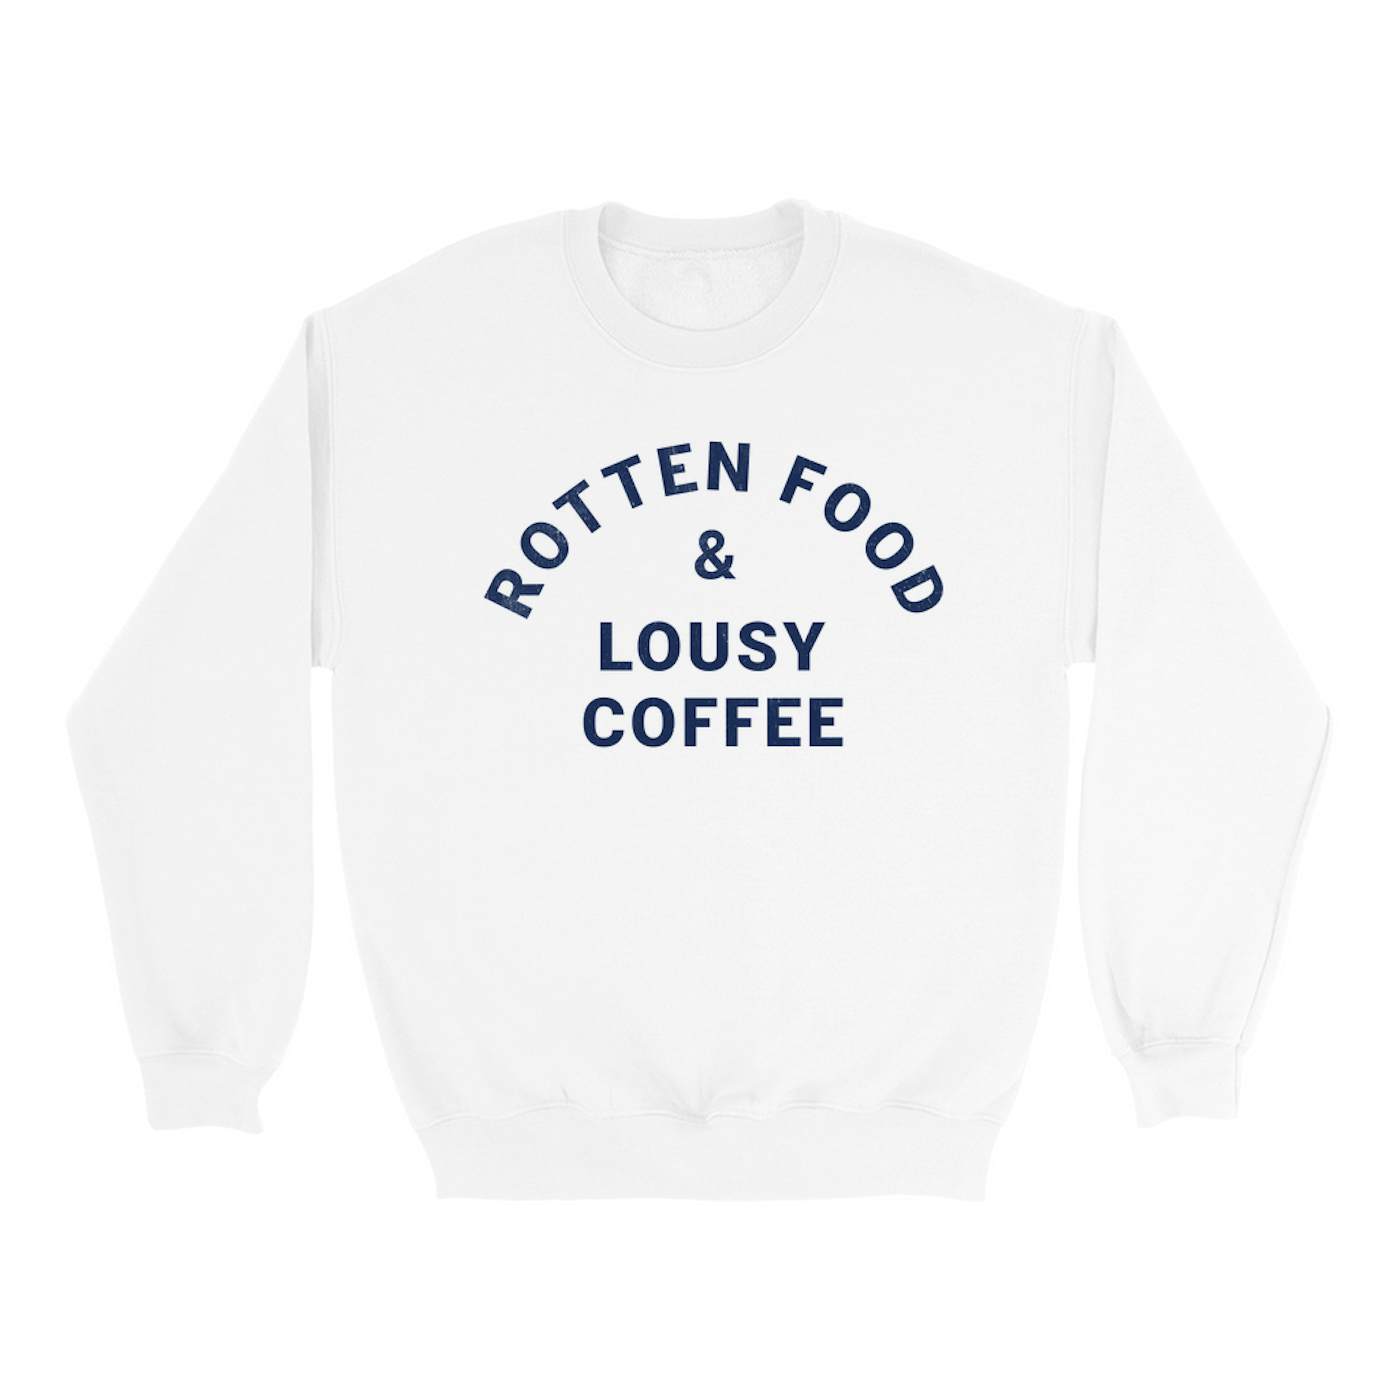 Joe Cocker Sweatshirt | Rotten Food & Lousy Coffee Tee worn by Joe Cocker Sweatshirt